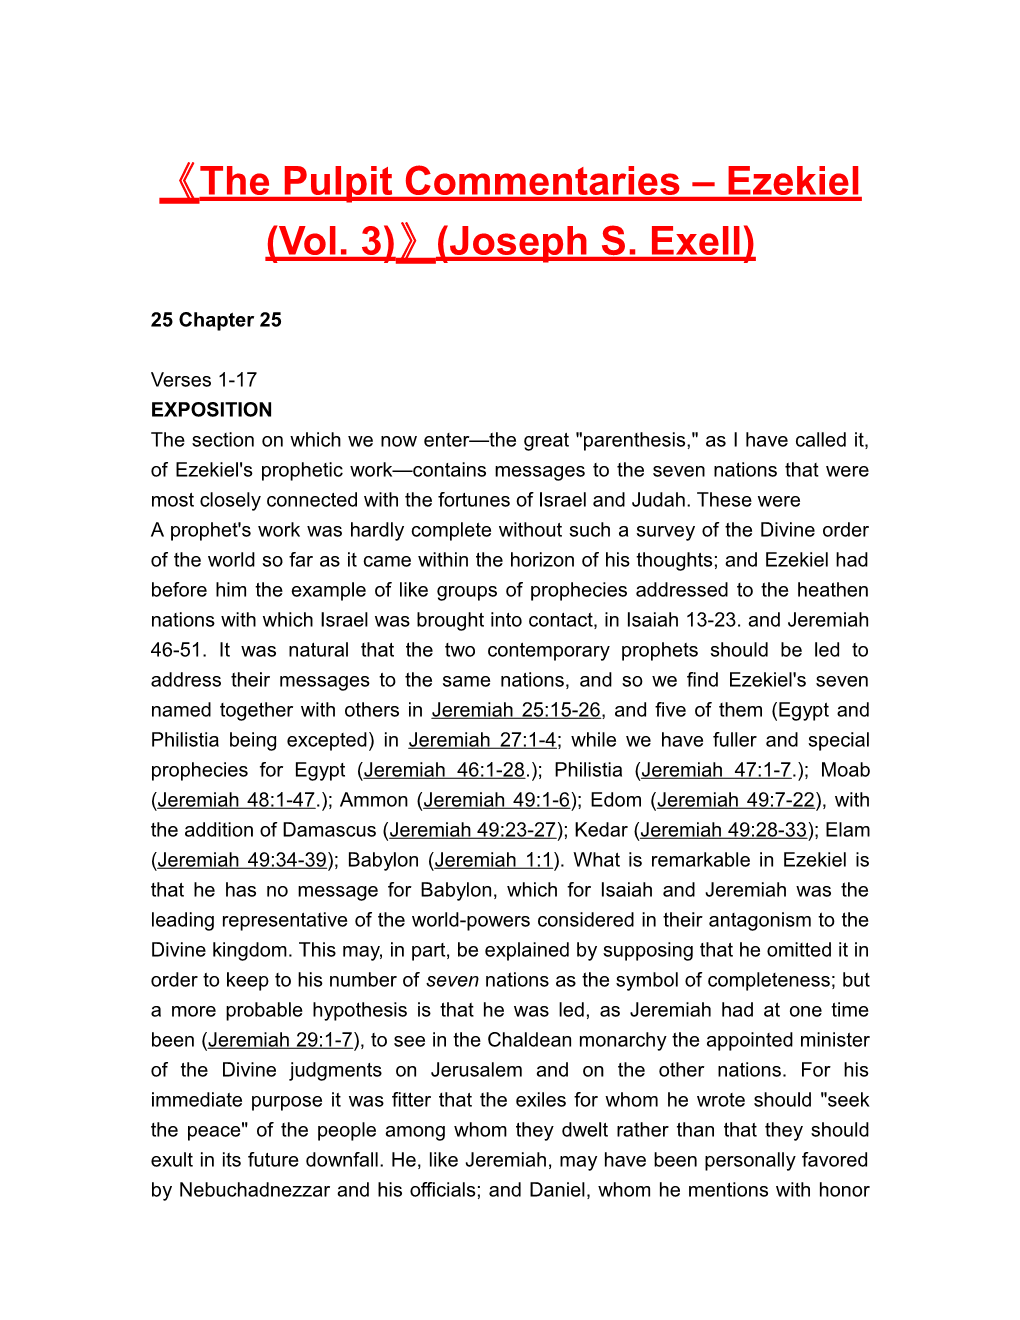 The Pulpit Commentaries Ezekiel (Vol. 3) (Joseph S. Exell)